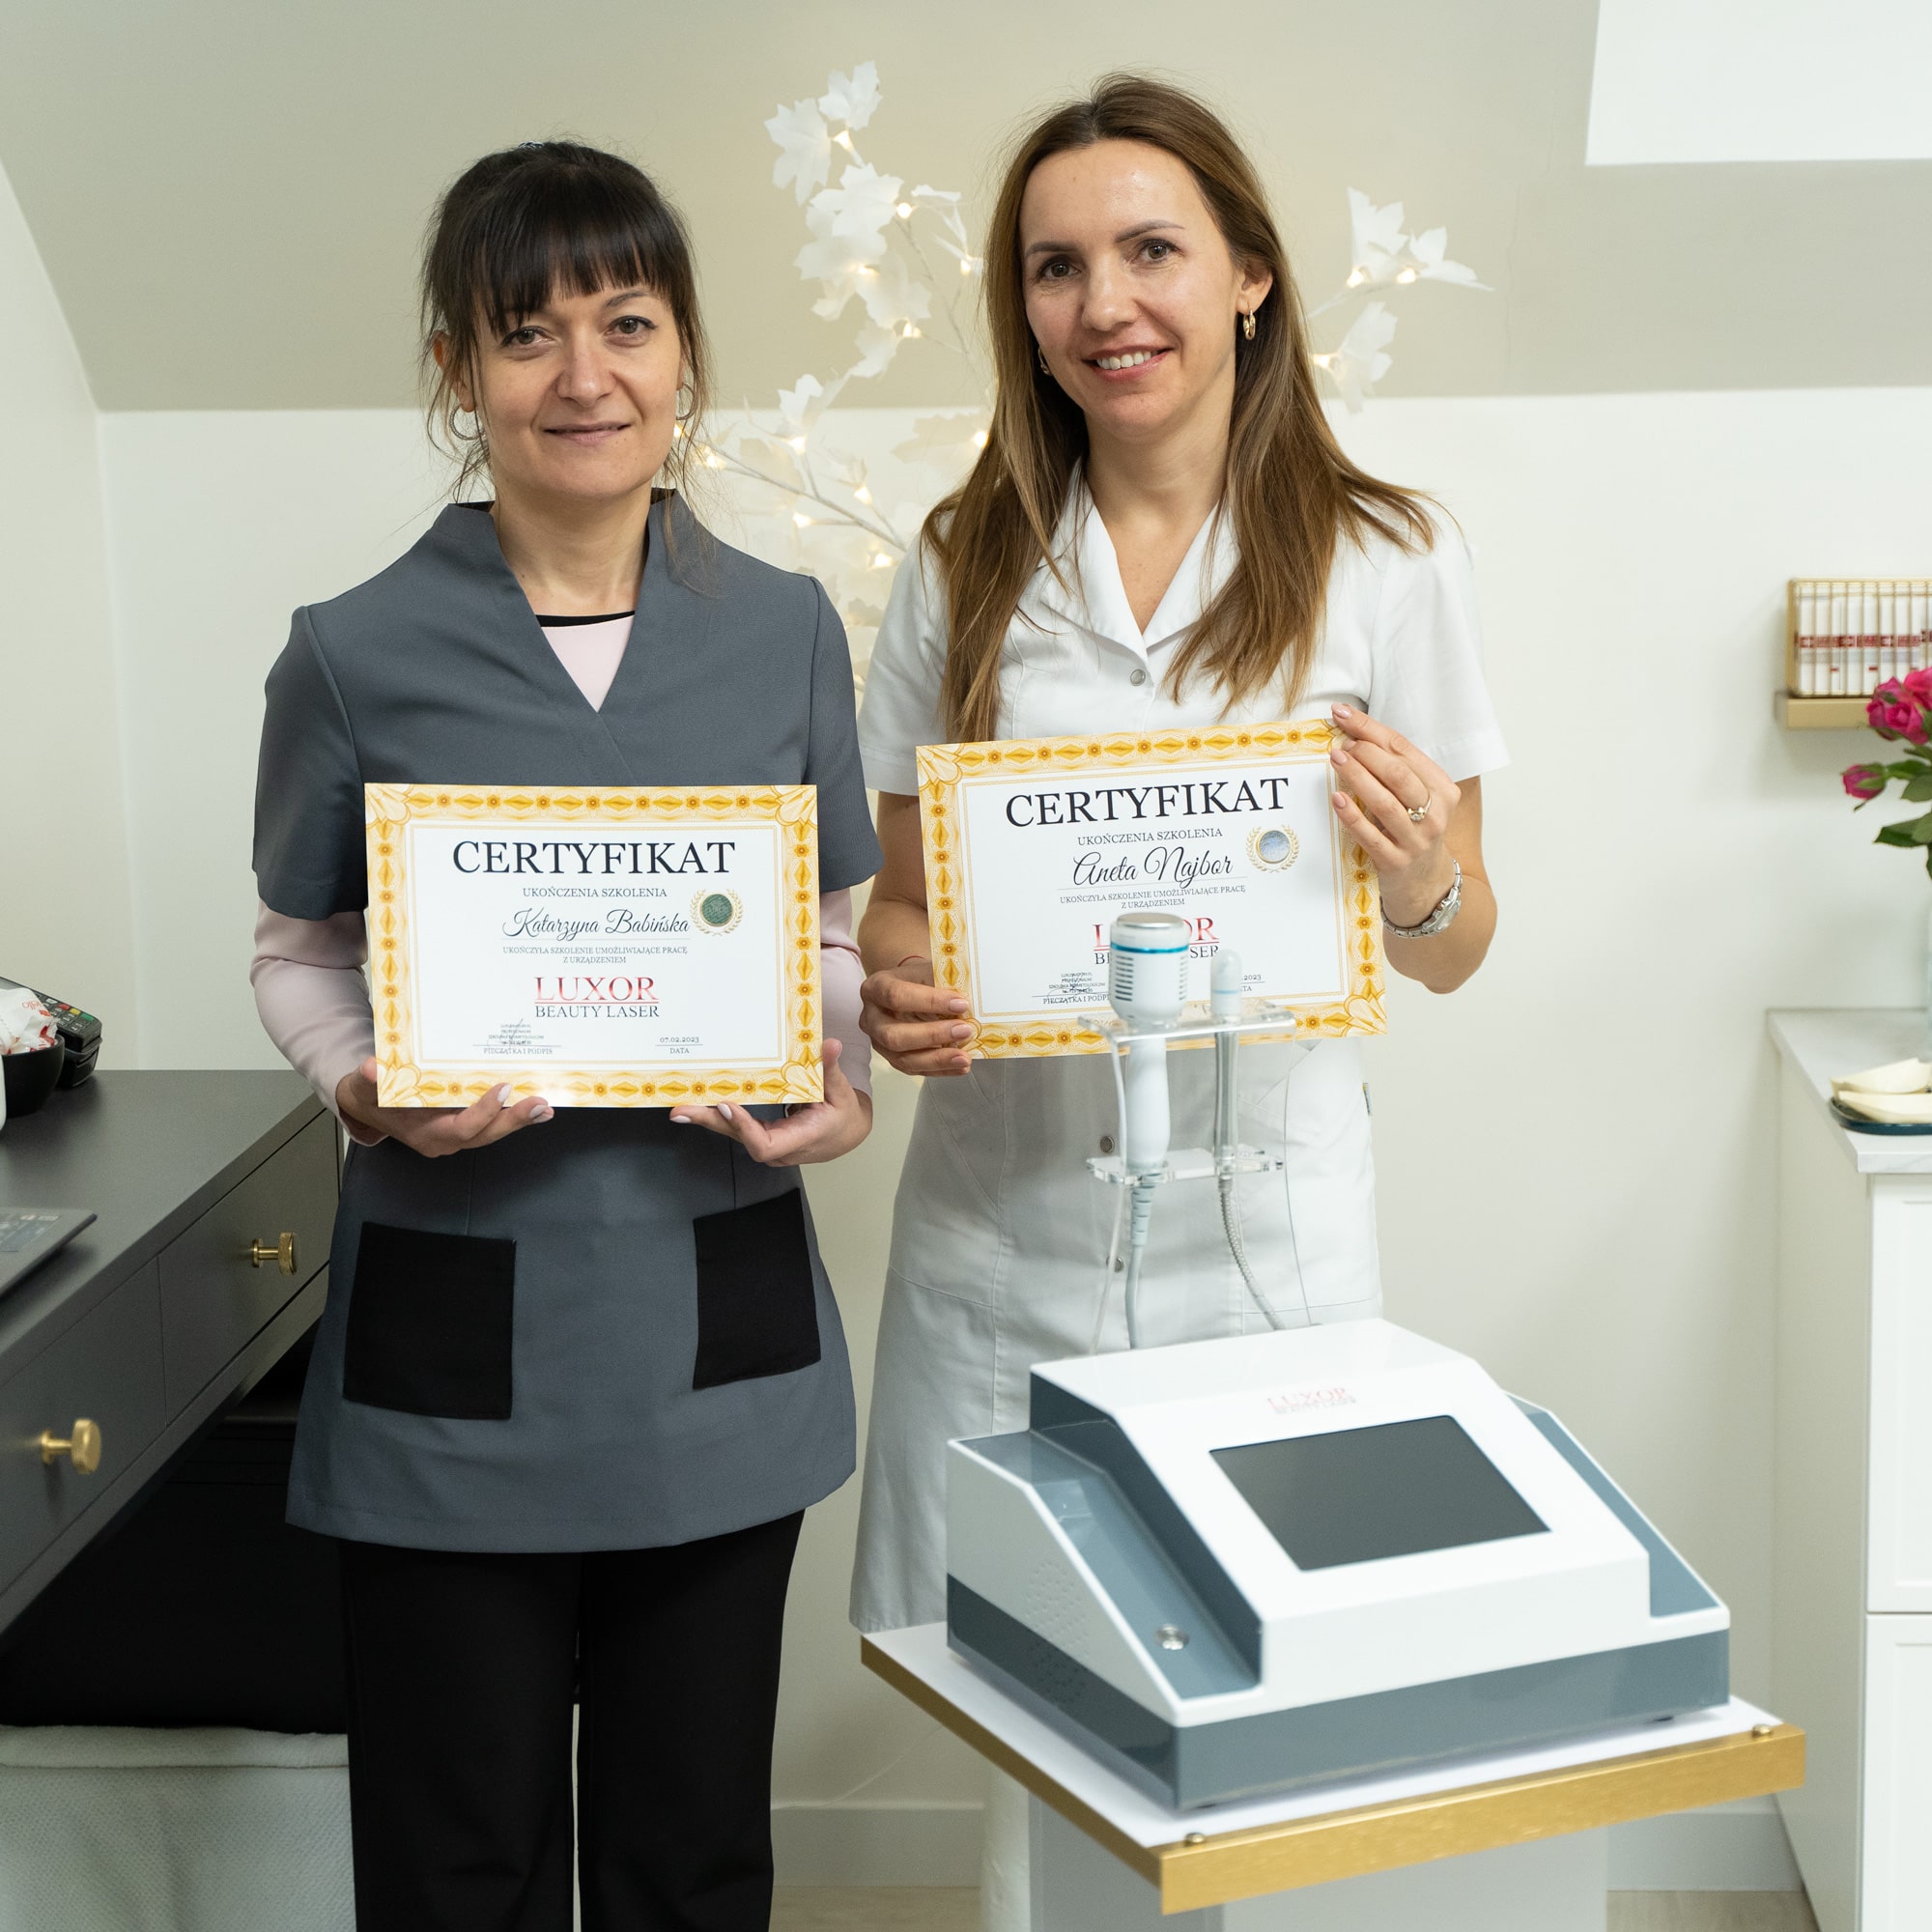 Obie uczestniczki z Andrychowa otrzymały imienne certyfikaty zaświadczające o ich wiedzy i umiejętności obsługi wybranych maszyn zabiegowych